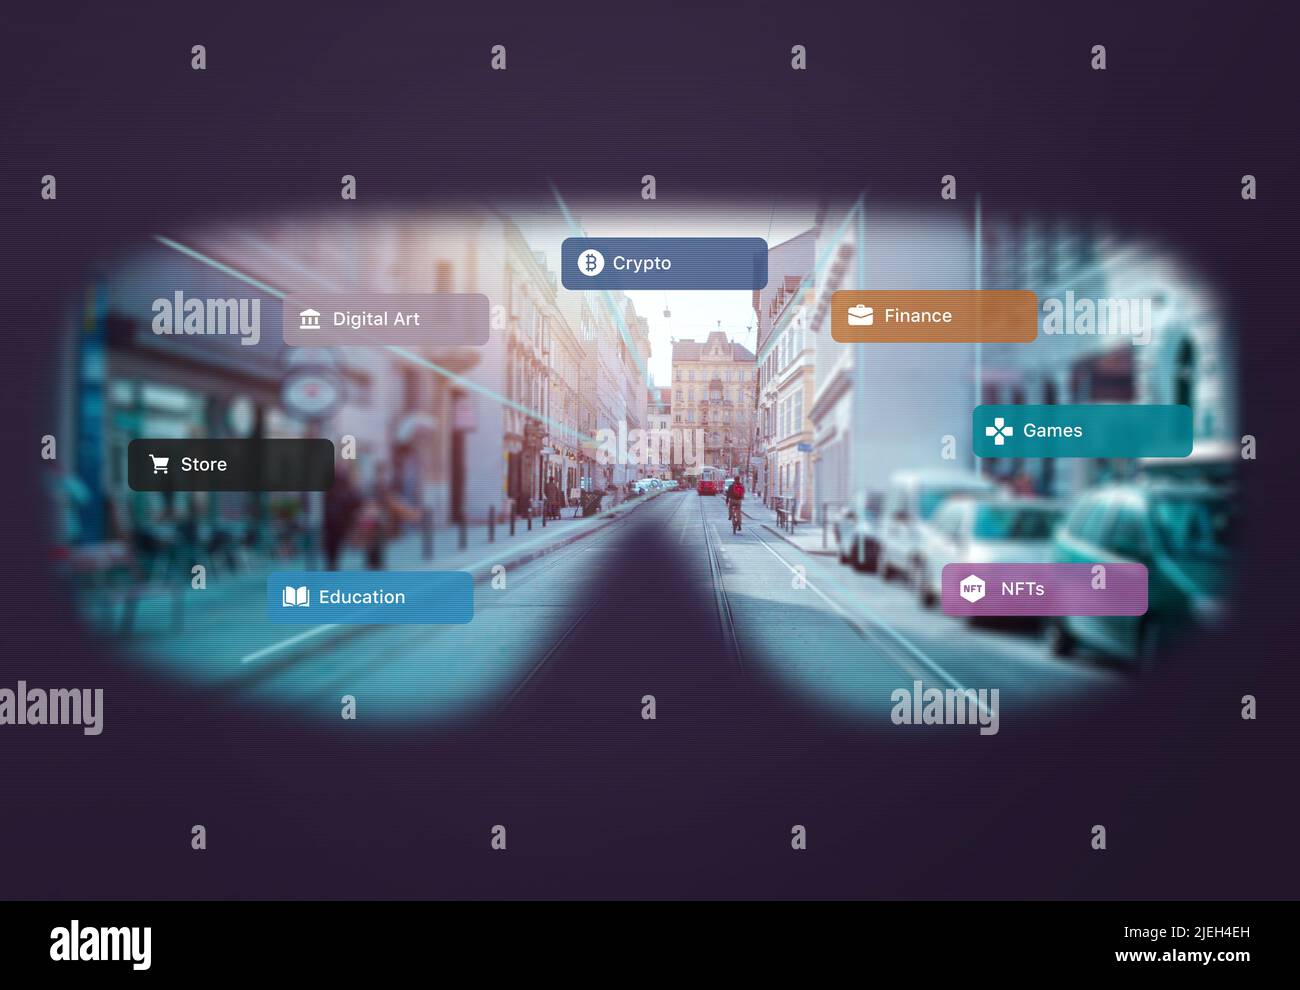 Vista della città metaverse attraverso il concetto di occhiali VR. Opzioni di interfaccia per negozi in visita, arte digitale, giochi, cripto, nft Foto Stock